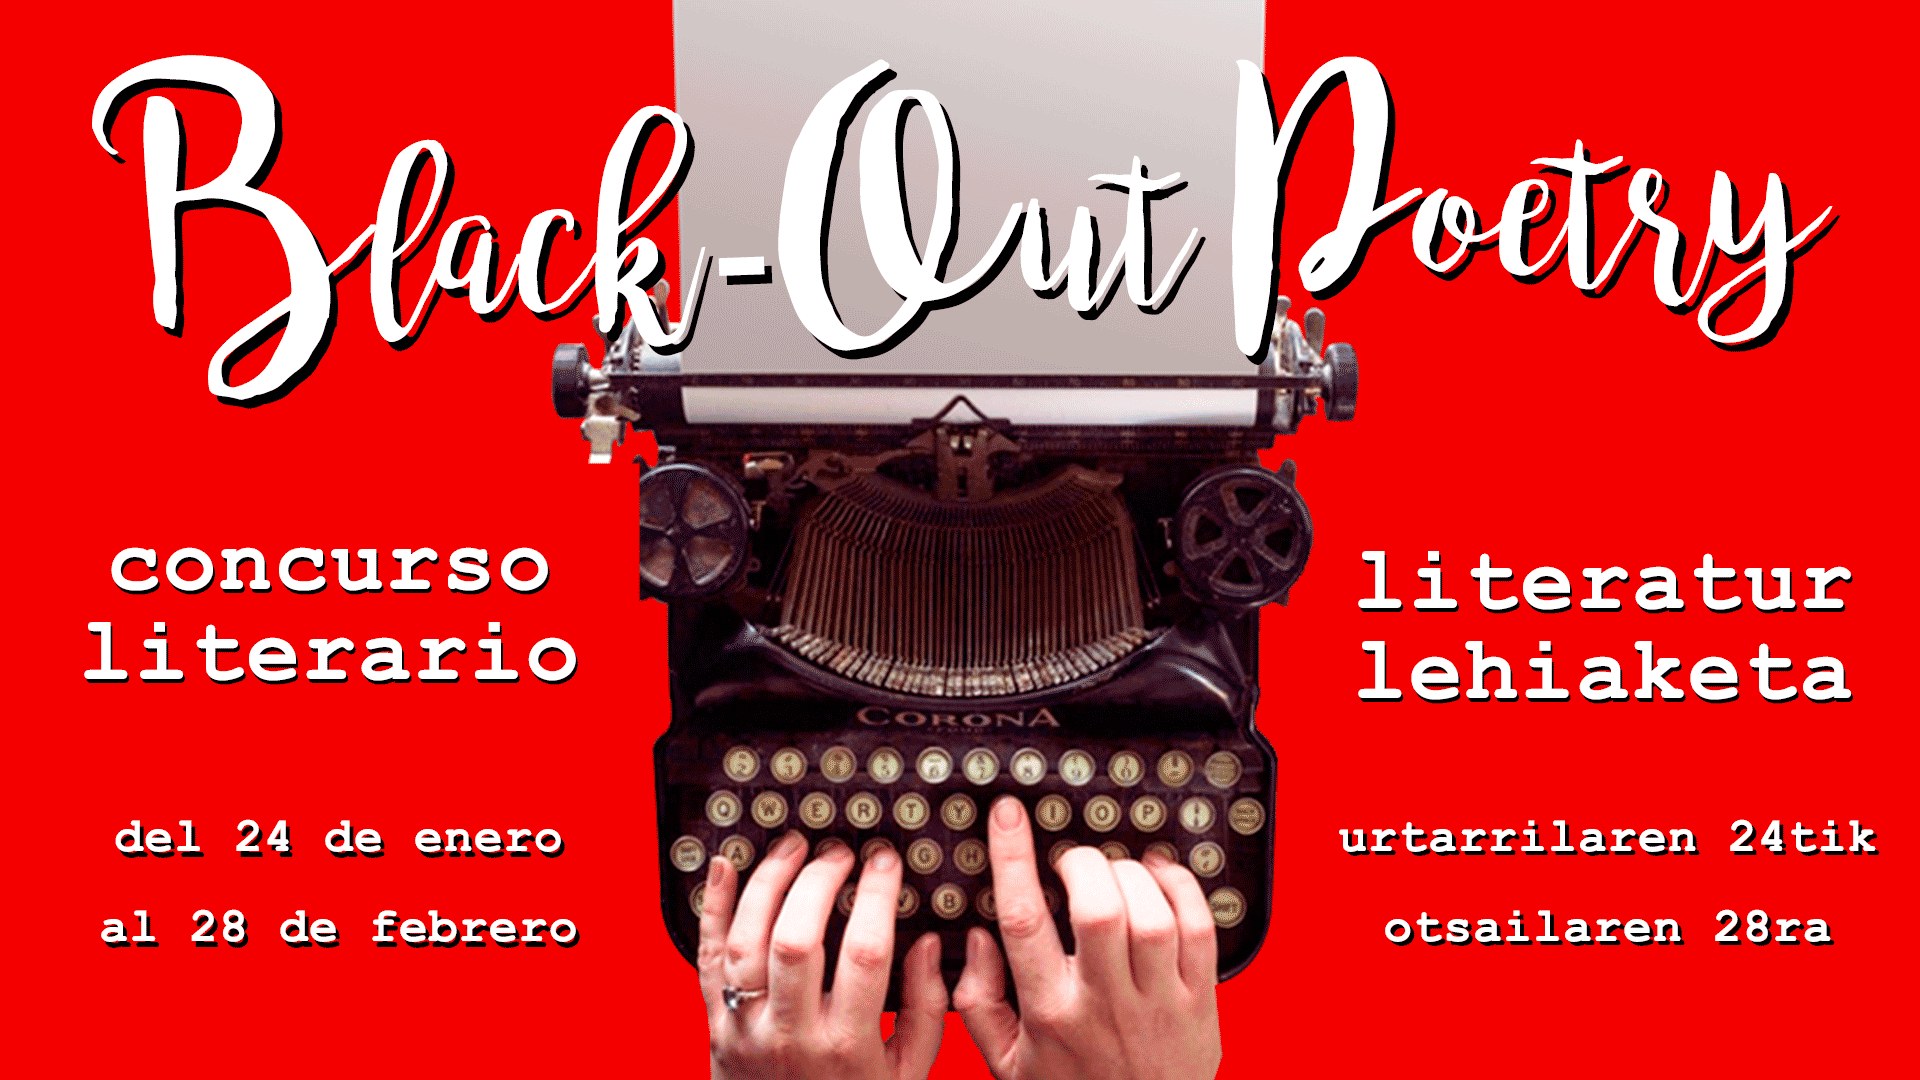 Concurso Literario “Black-out Poetry”